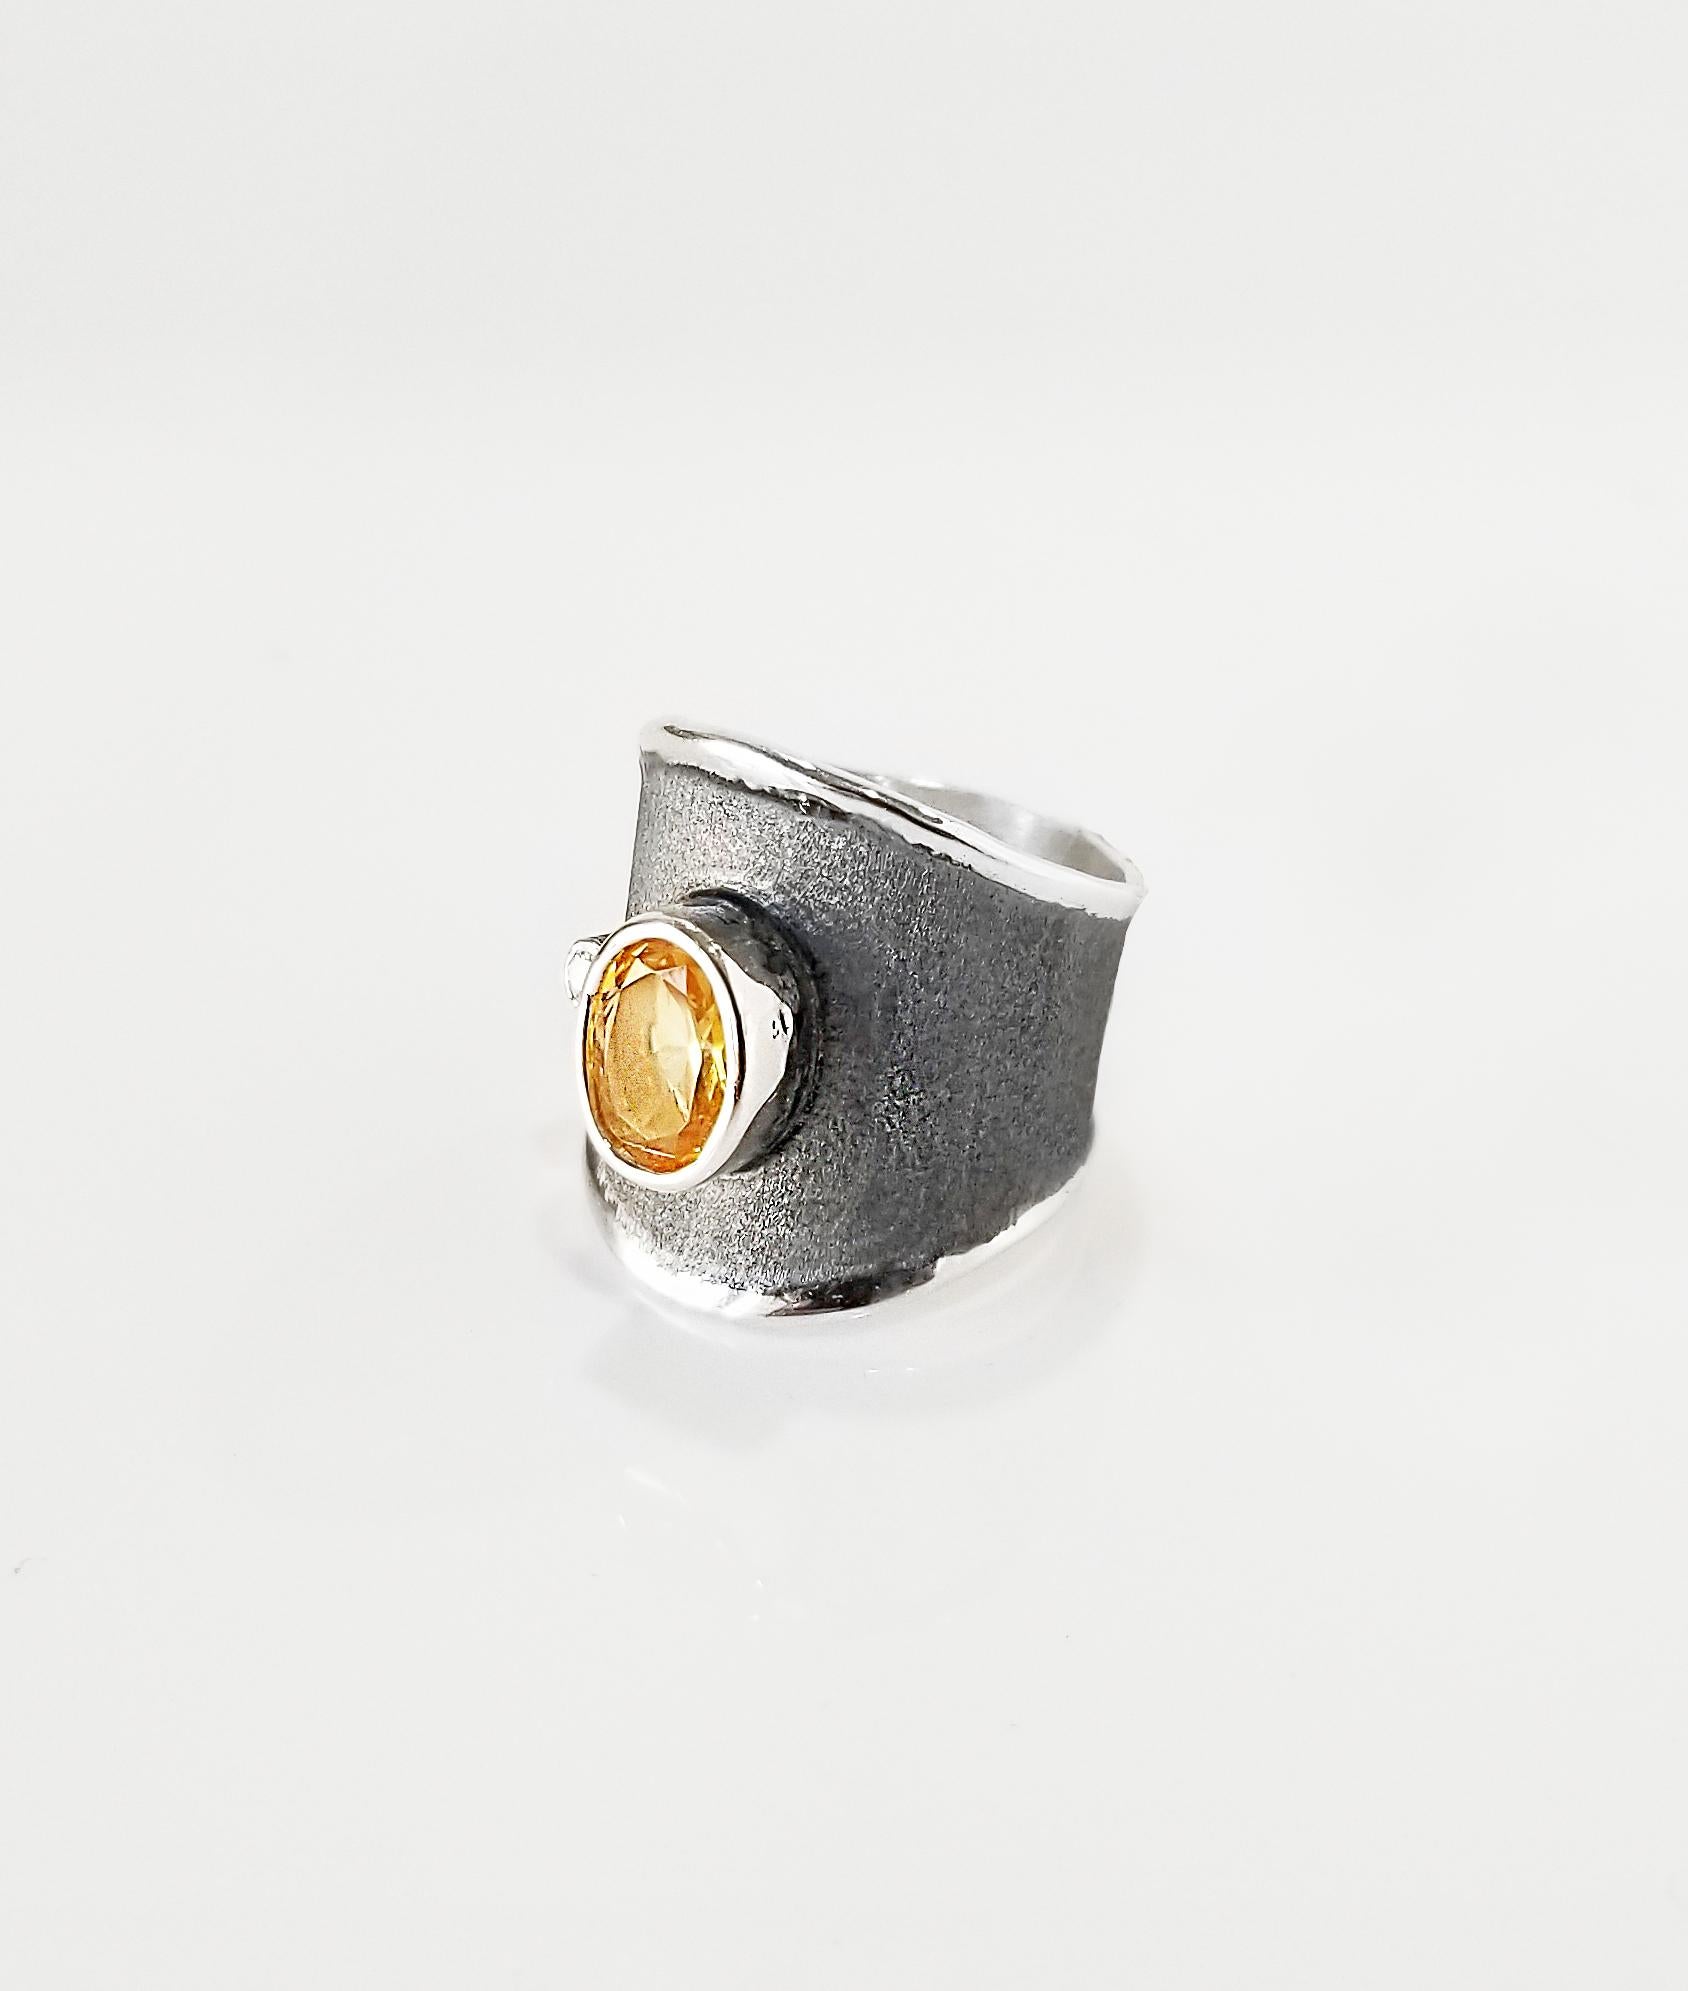 Wir präsentieren einen handgefertigten Ring von Yianni Creations, der in Griechenland für Hephestos Collection hergestellt wurde. Dieser handgefertigte Ring ist aus Feinsilber 950er Reinheit gefertigt und mit Palladium beschichtet, um den Elementen